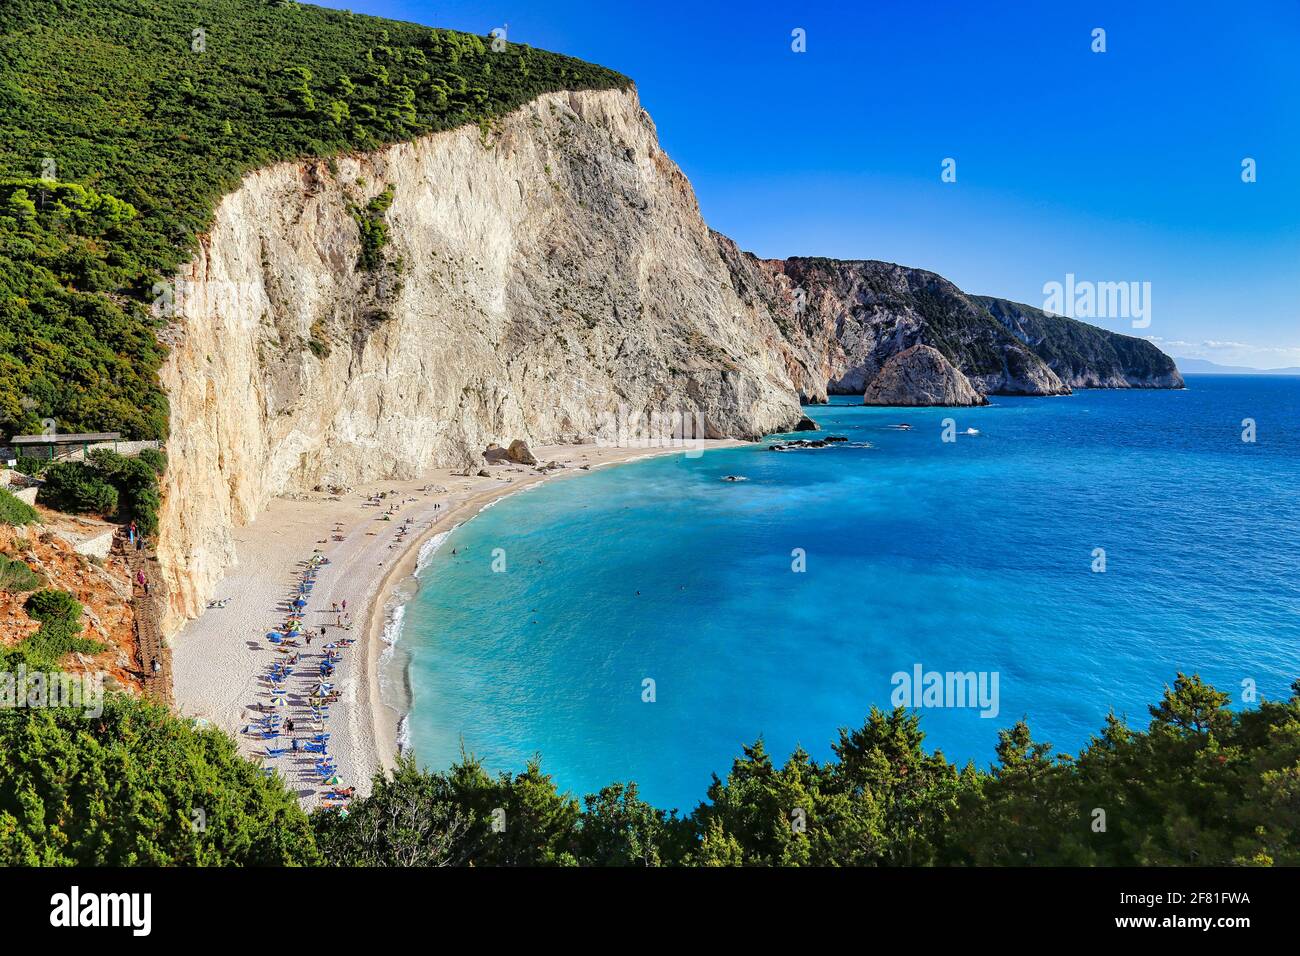 Die Bucht und der Strand von Porto Katsiki auf Lefkada ( Lefkas ) in Griechenland. Stock Photo